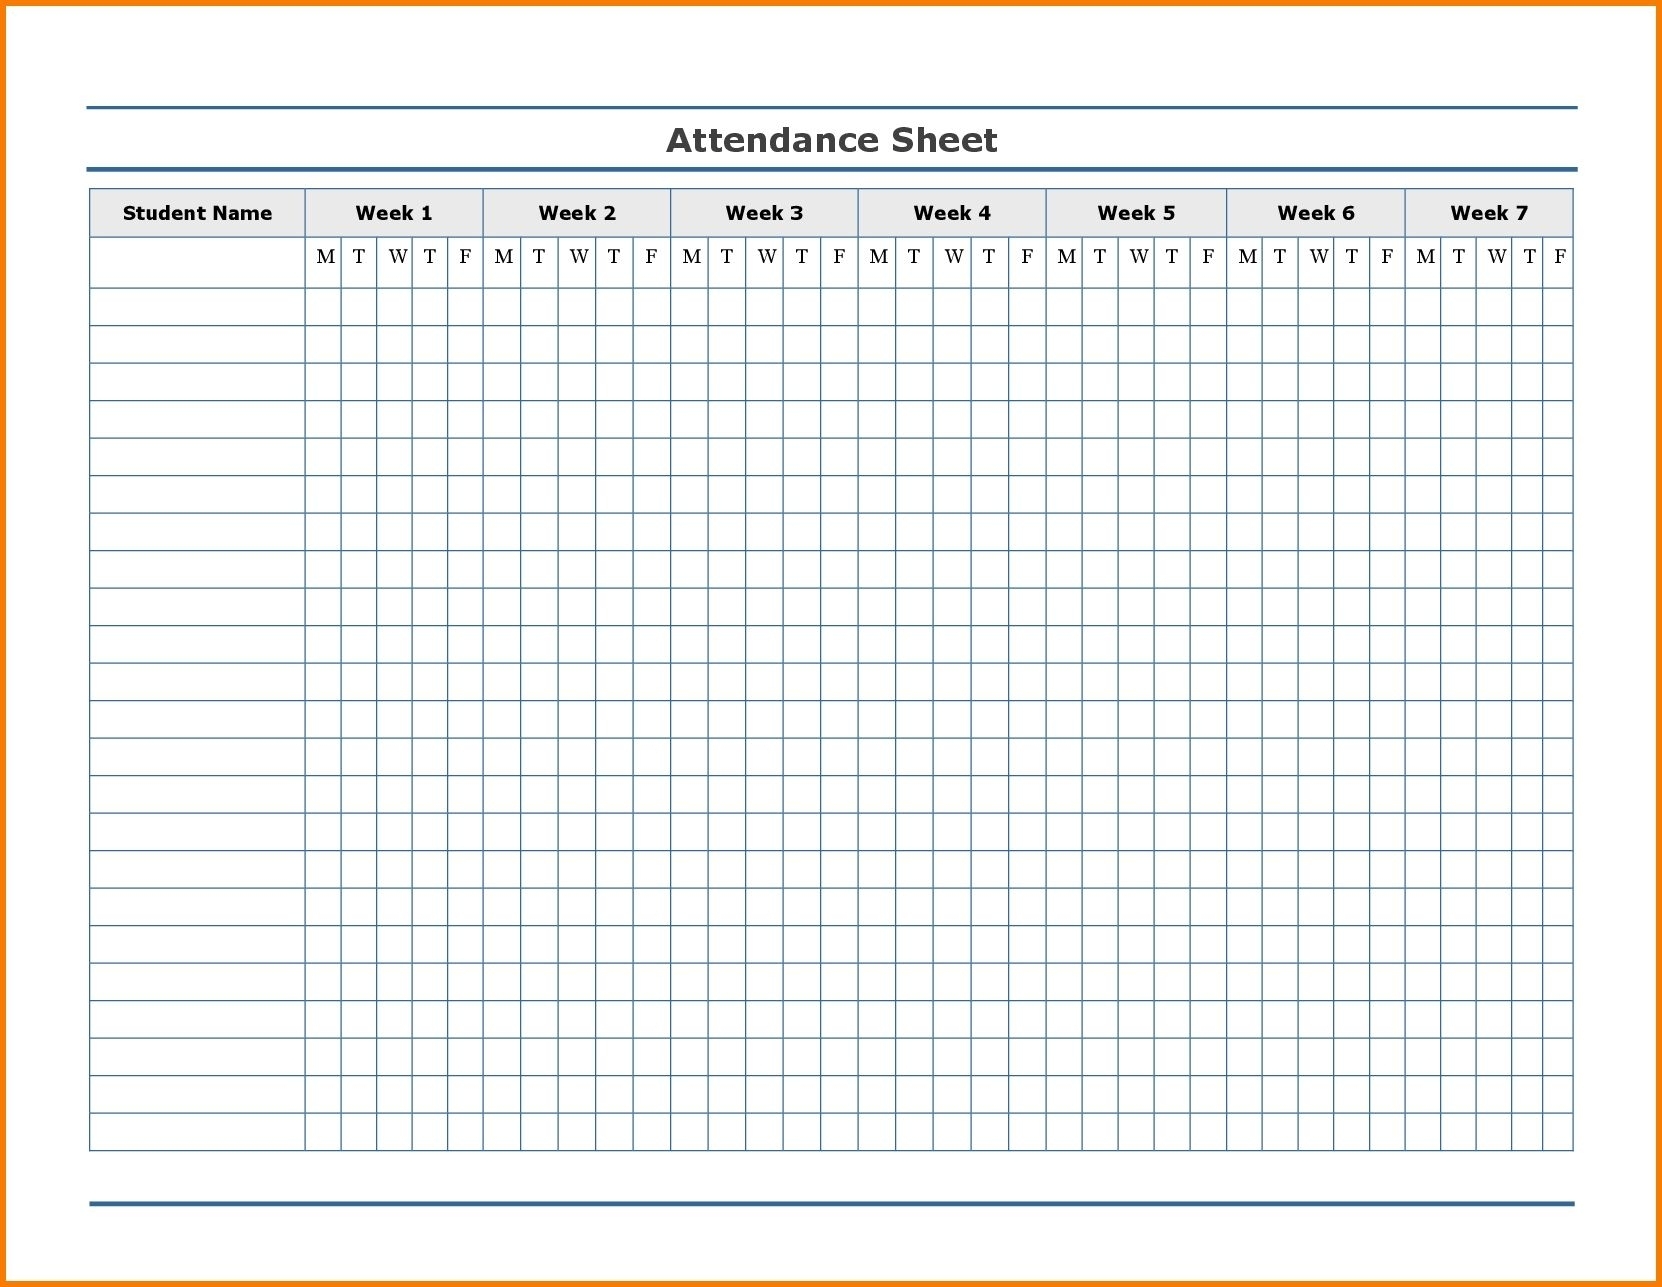 Free Employee Attendance Calendar | Employee Tracker inside Printable Employee Attendance Calendar 2020